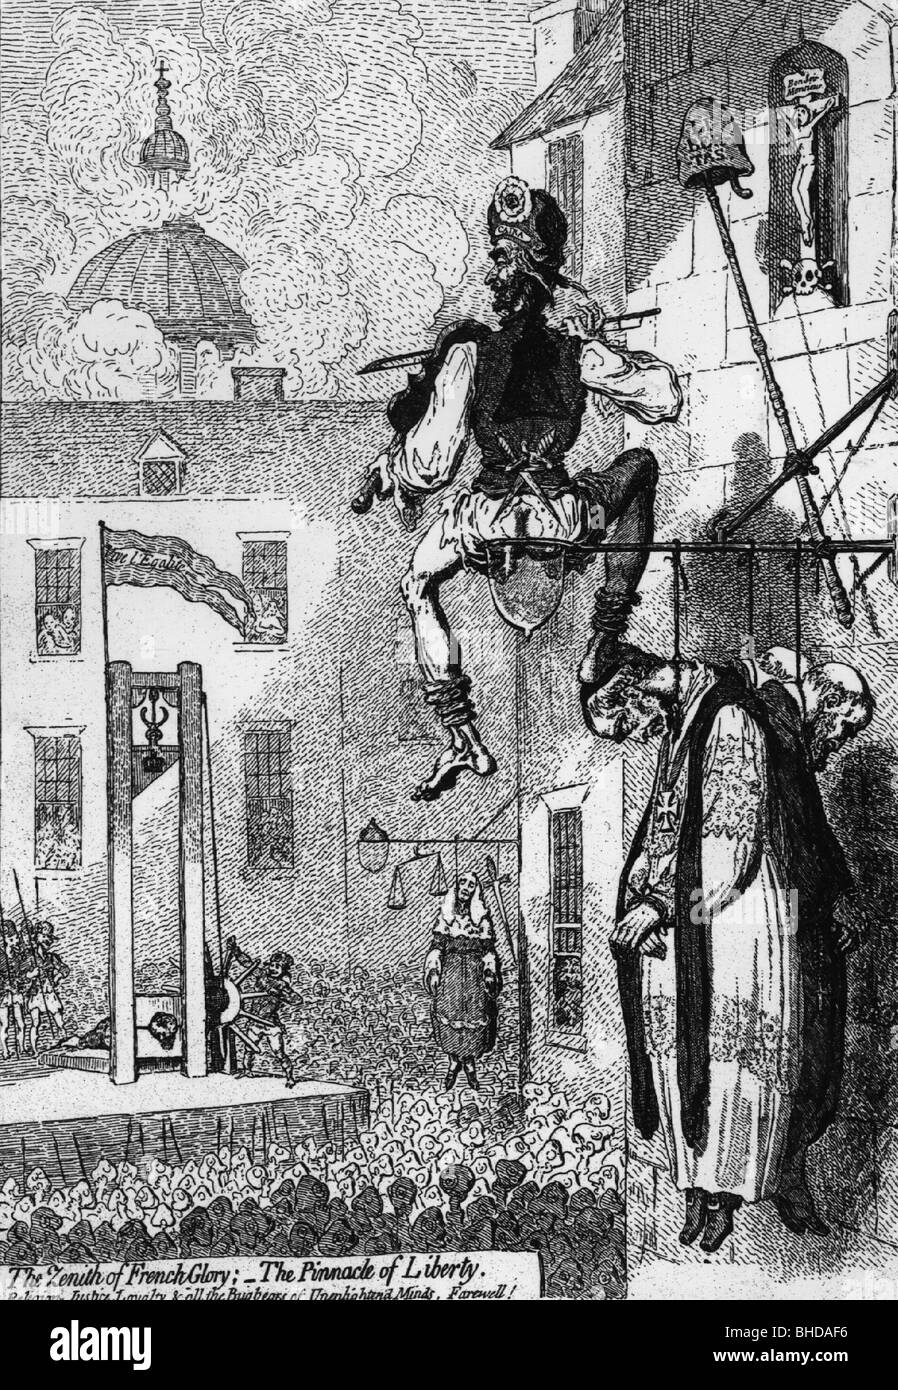 Geographie/Reise, Frankreich, französische Revolution 1789, Karikatur mit der Hinrichtung von König Ludwig XVI., Zeichnung von James Gillray, 1727, Stockfoto